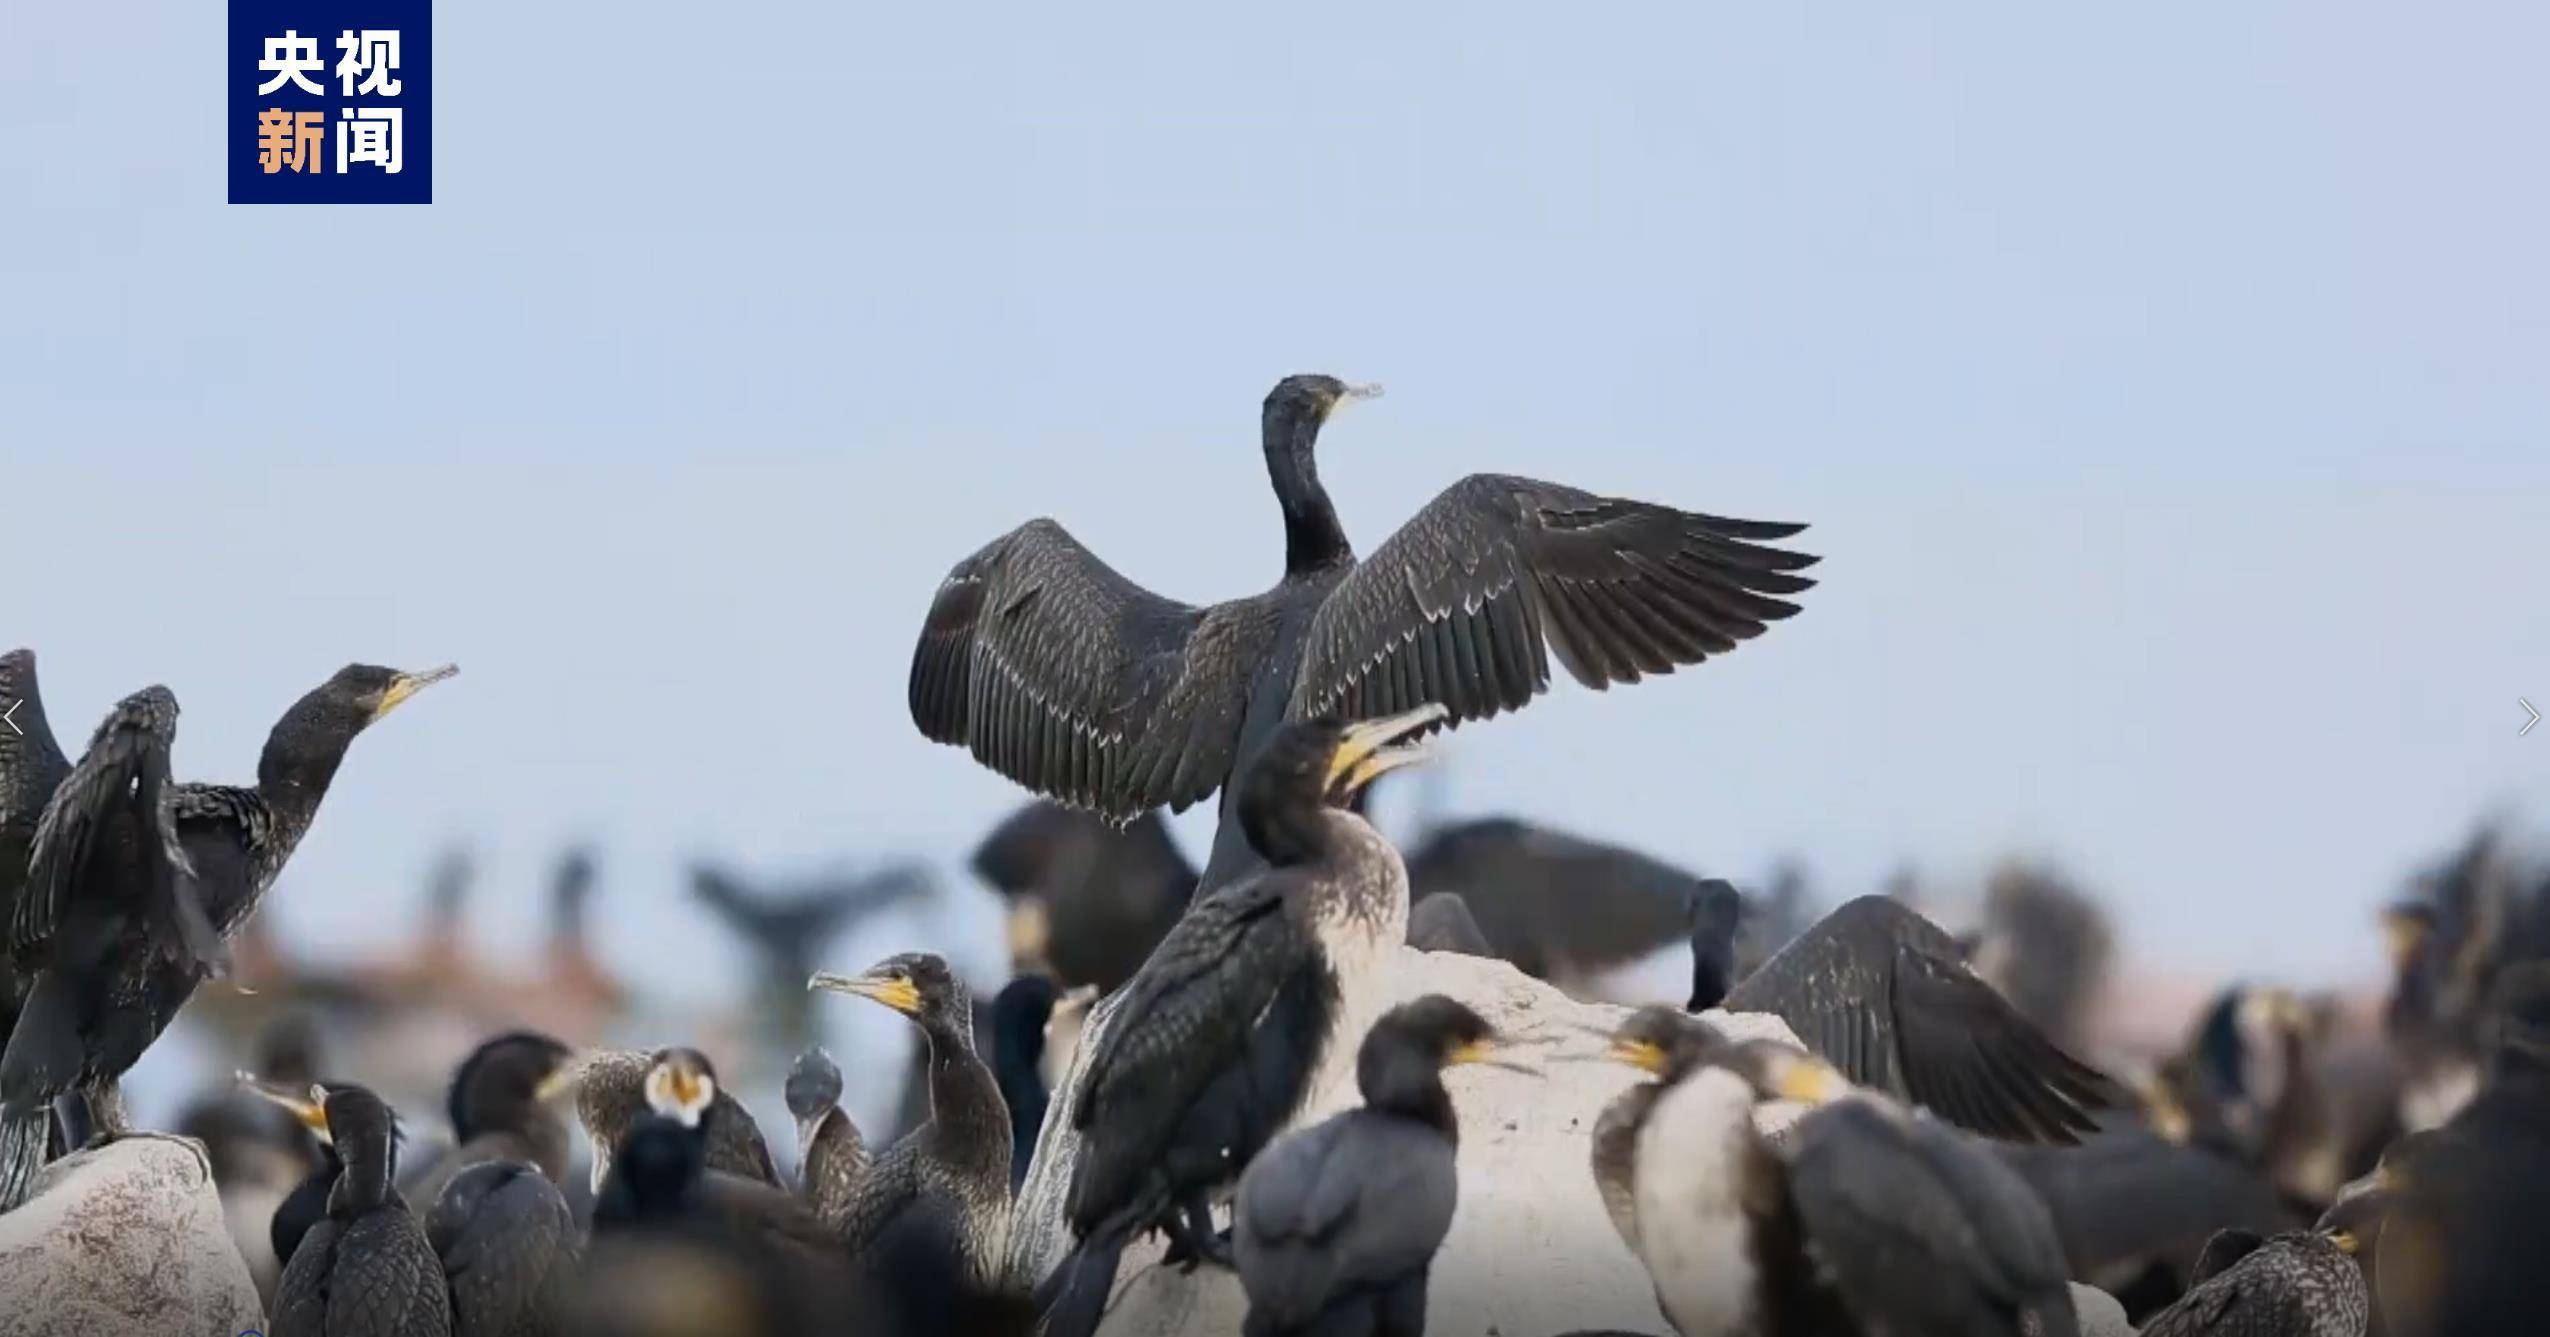 2021年度青海湖共监测记录到水鸟59种